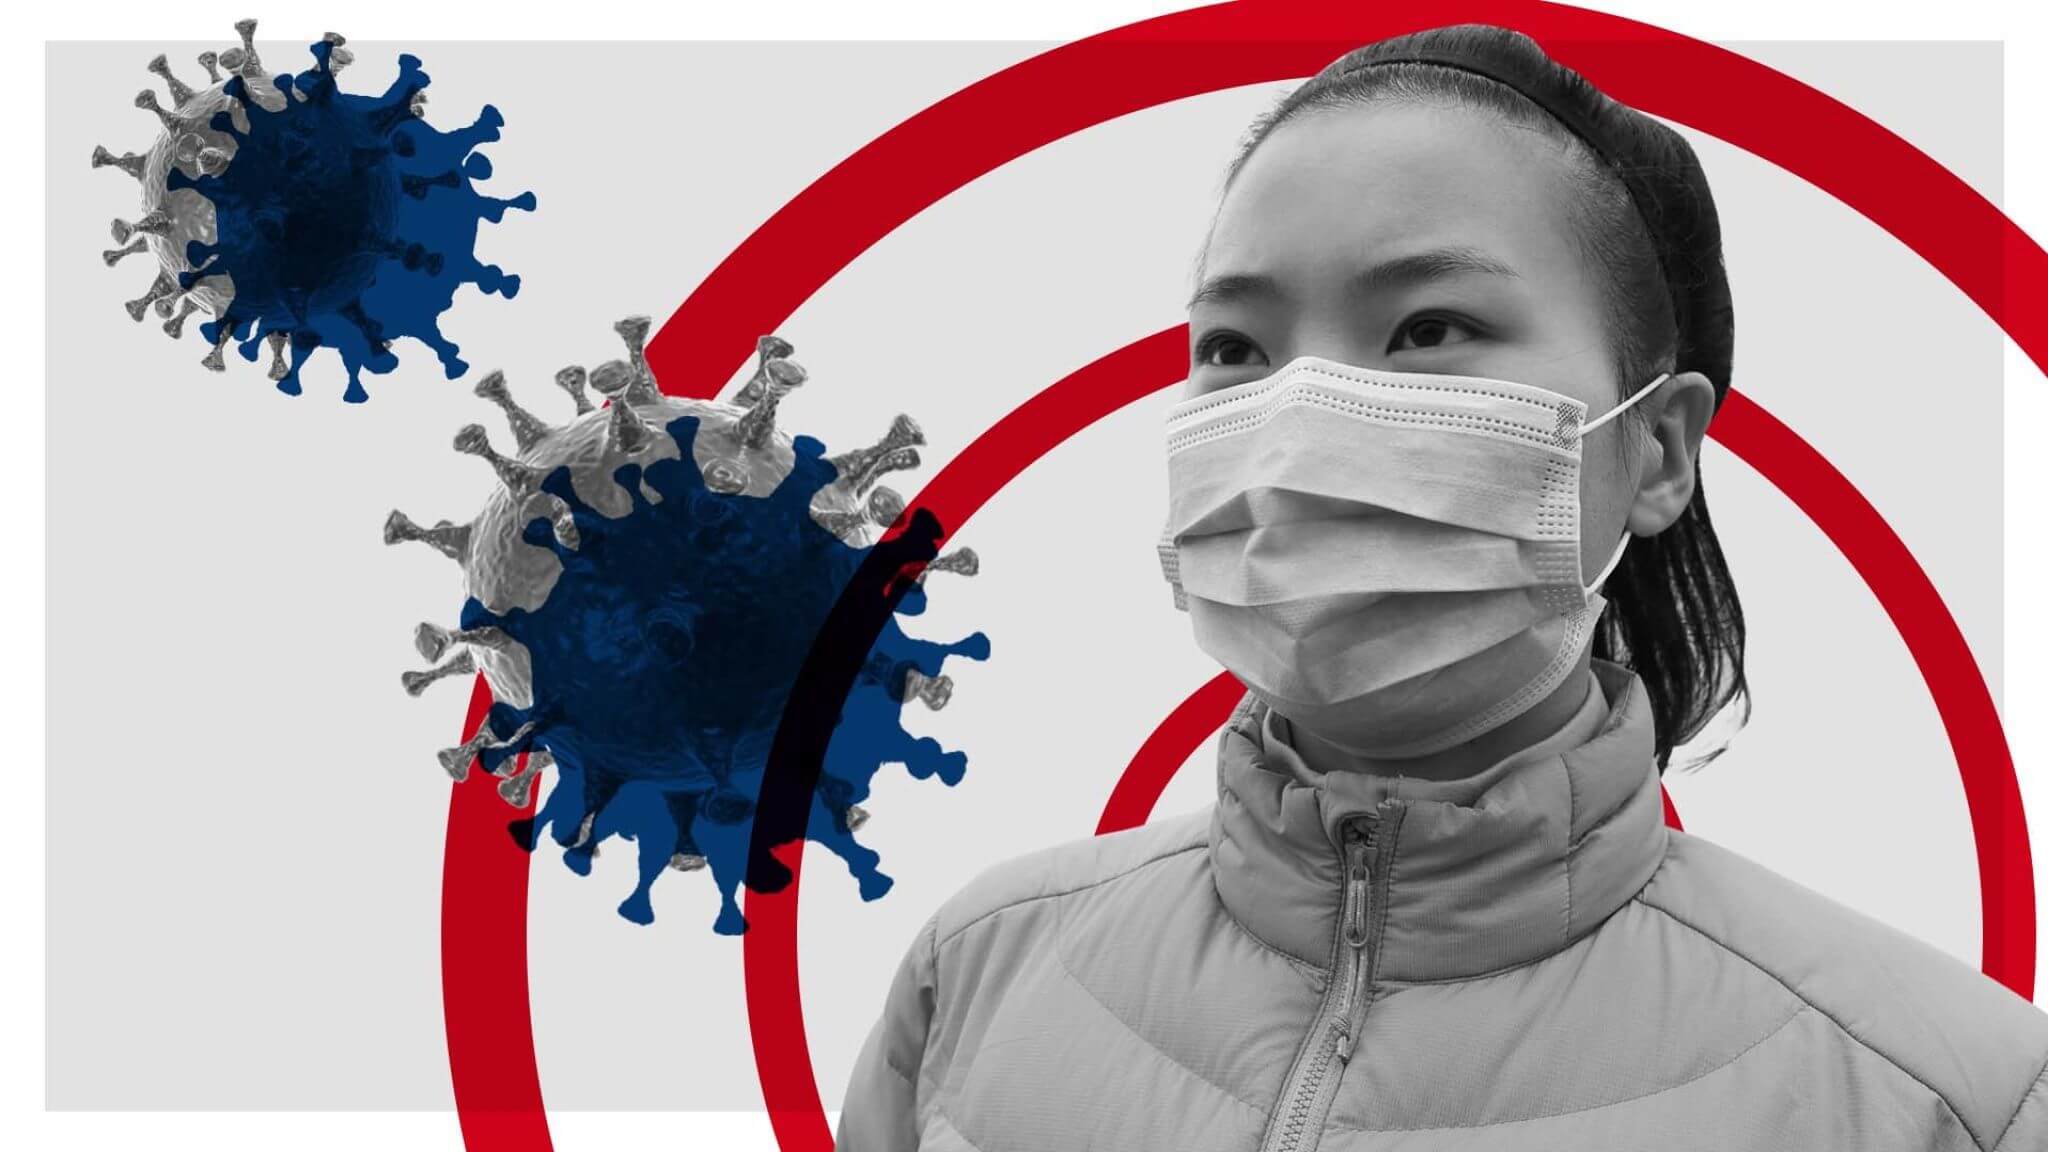 La fuga de laboratorio o interespecífica mutación: que fue la causa de los brotes de 2019-nCov en china?